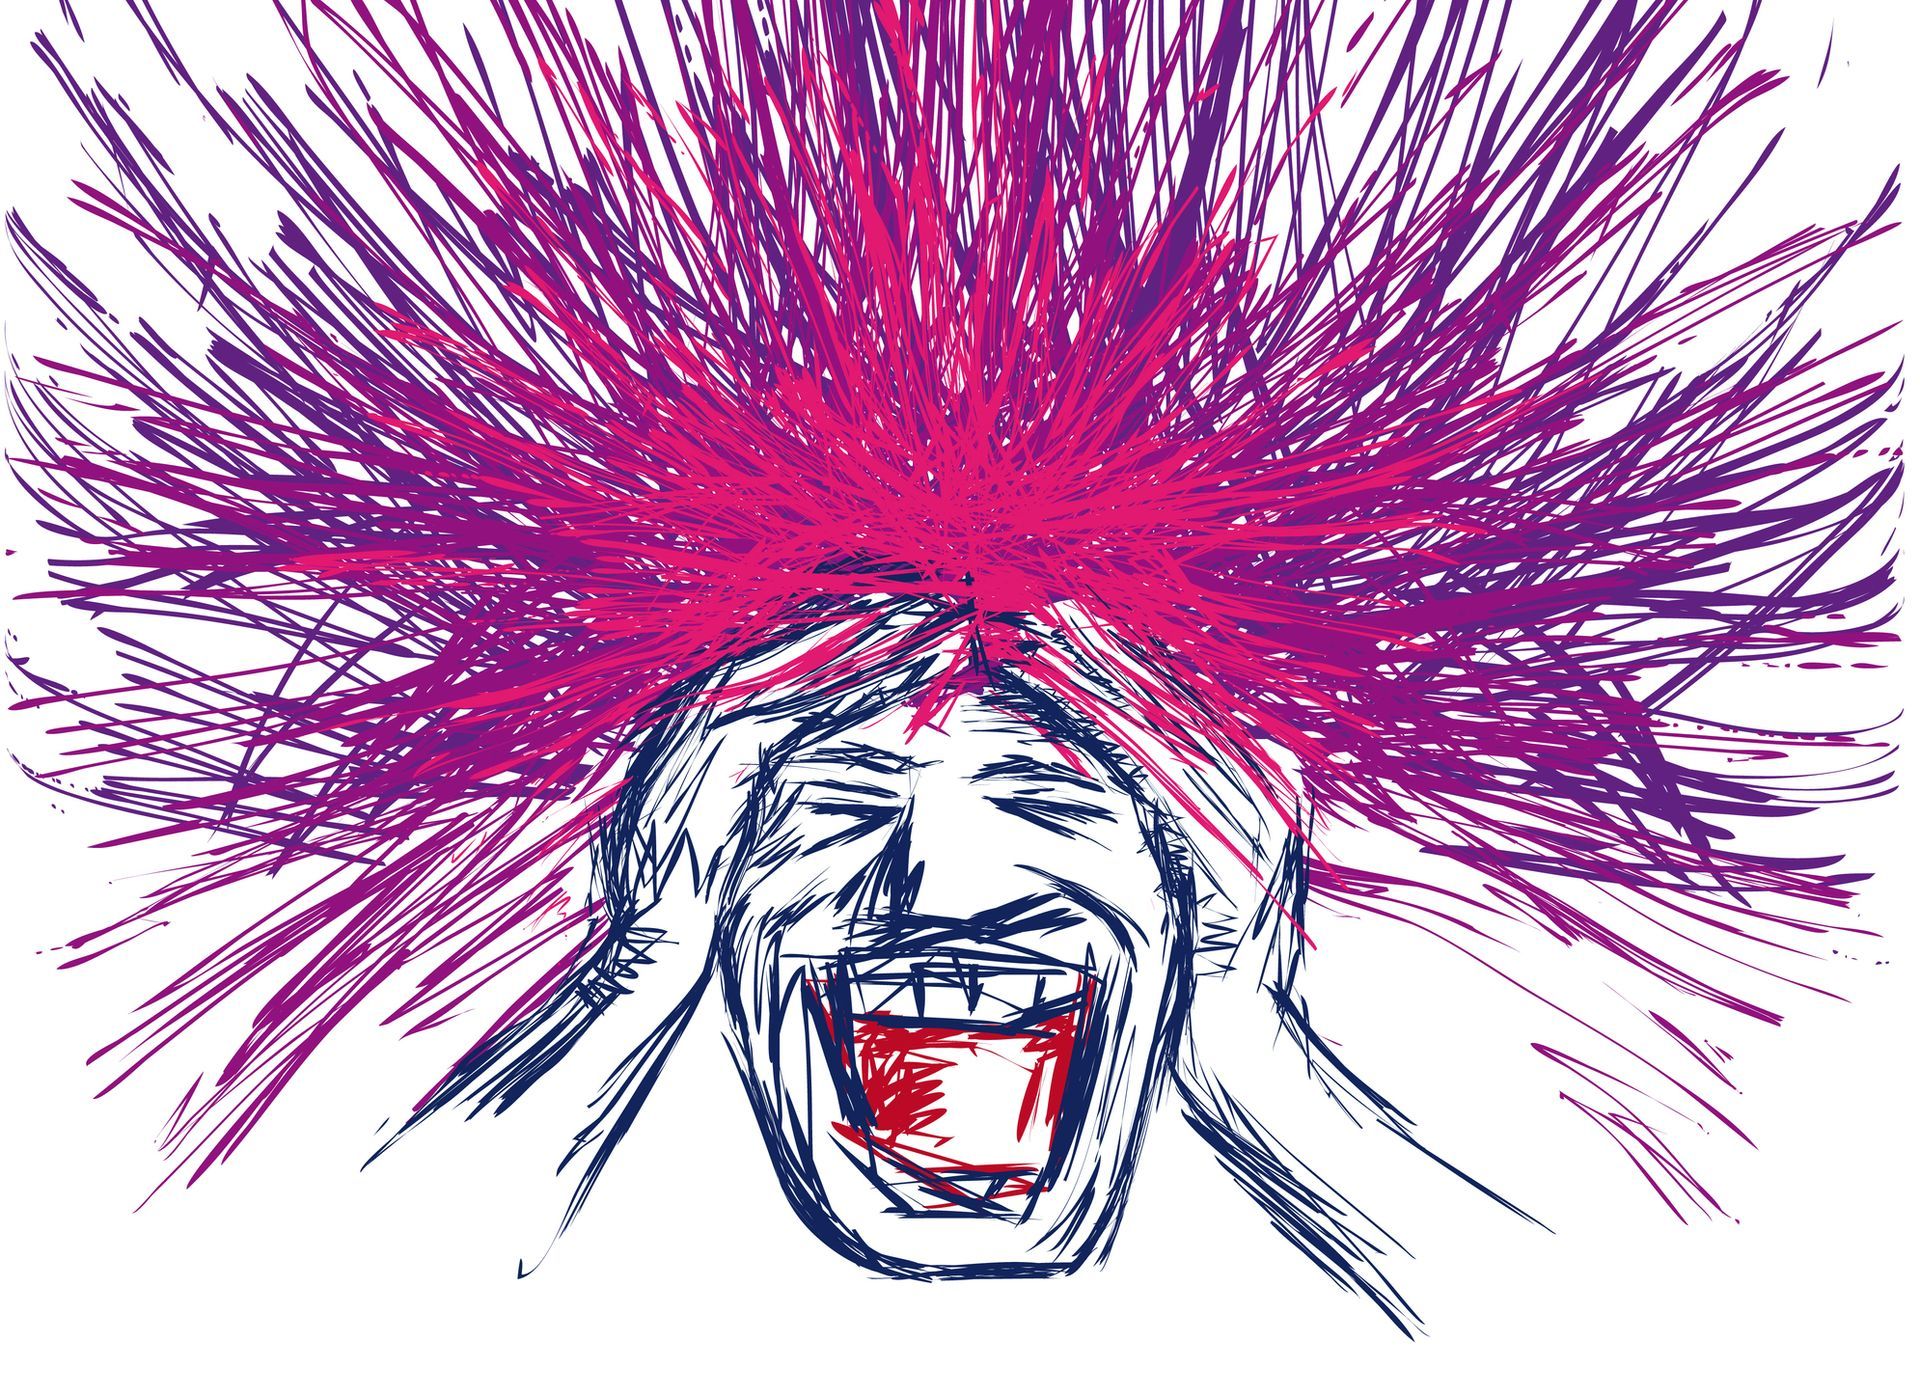 Illustratie van een man die zijn hoofd vasthoudt terwijl er paarse energie uit zijn hoofd opstijgt.